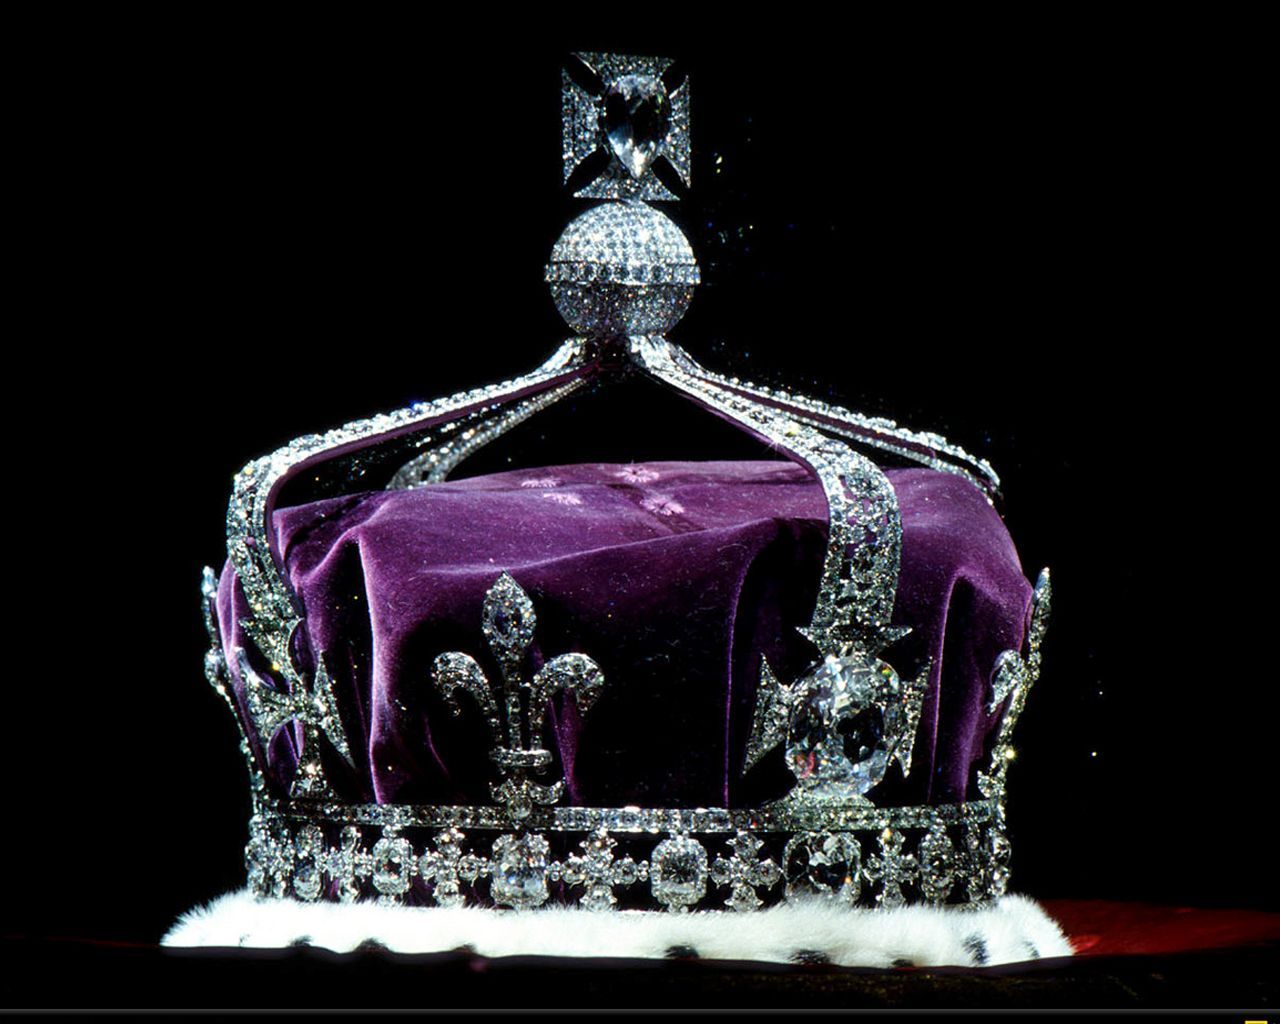 Koh I Noor Diamond Or Mountain Of Light. British Crown Jewels, Royal Crown Jewels, Royal Jewels